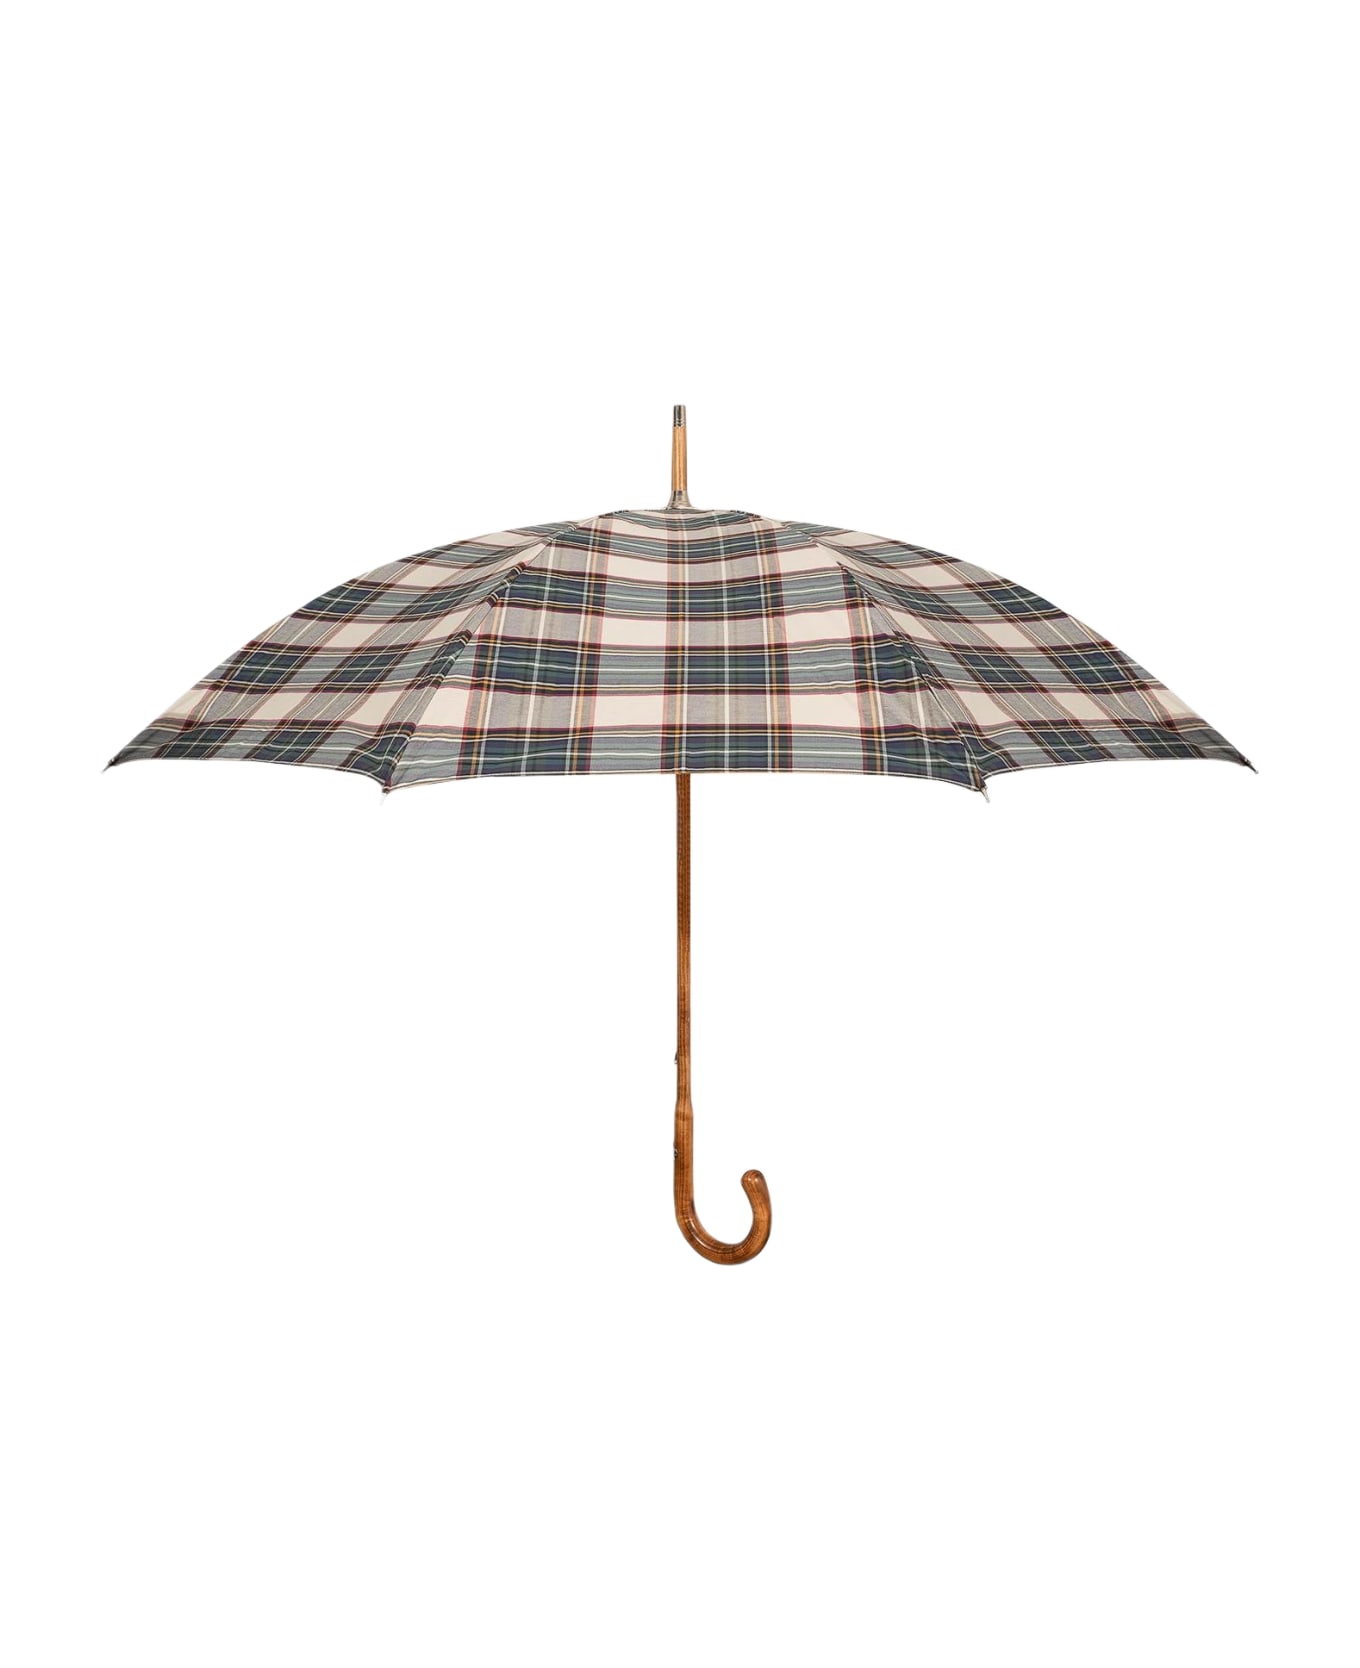 Larusmiani Umbrella 'tartan' Umbrella - Beige